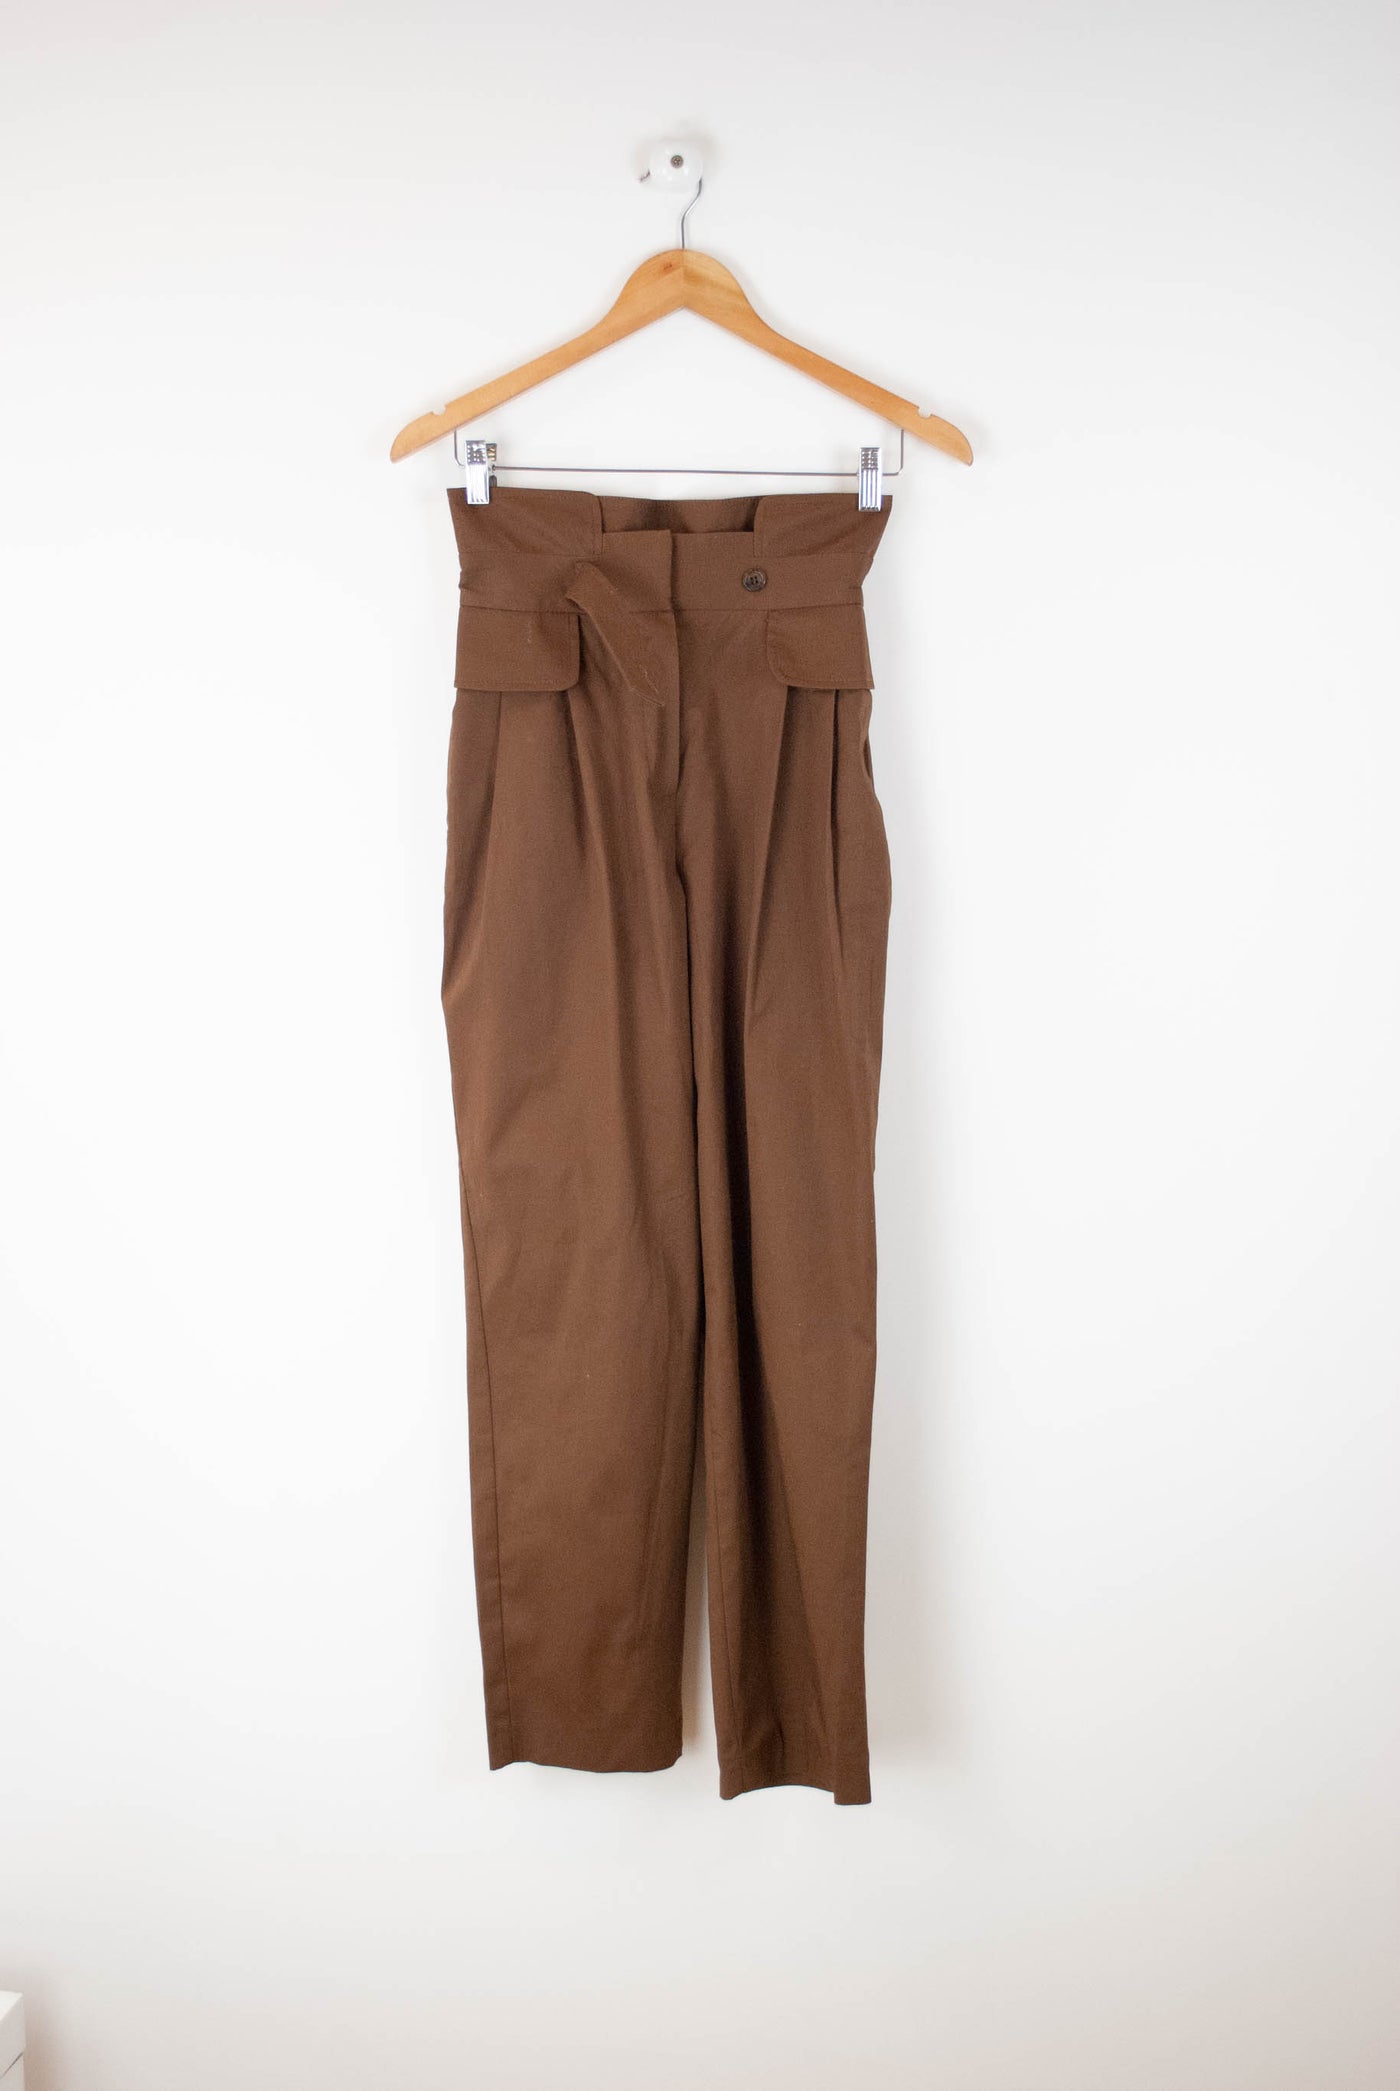 Pantalón marrón